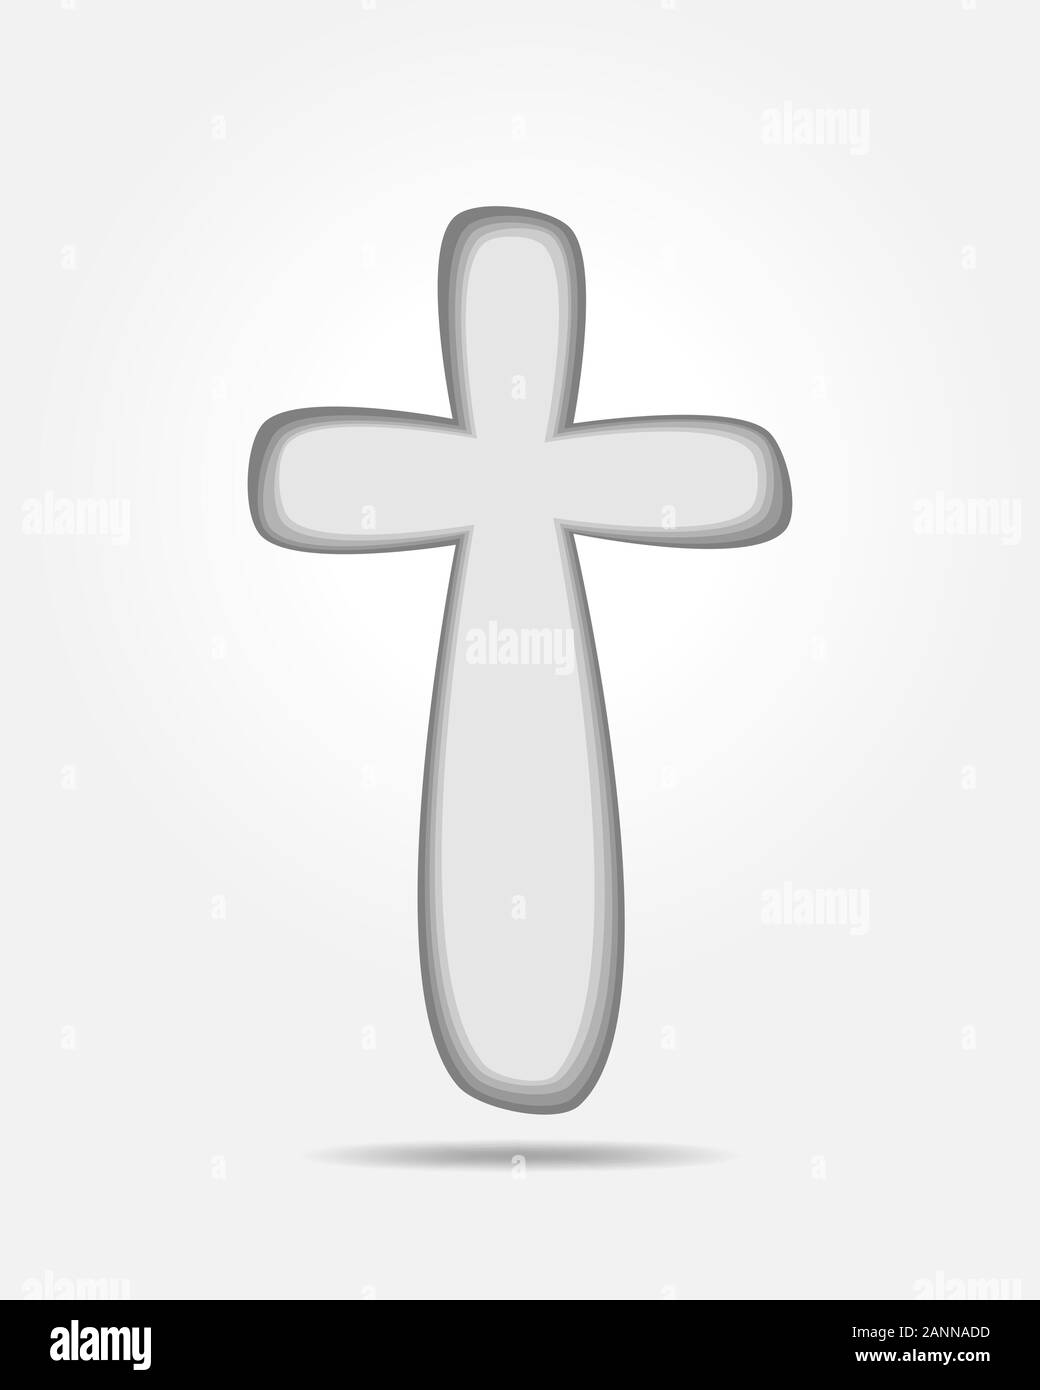 Icona a forma di croce - piatto immagine vettoriale. Nero semplice croce cristiana - illustrazione vettoriale. Illustrazione Vettoriale